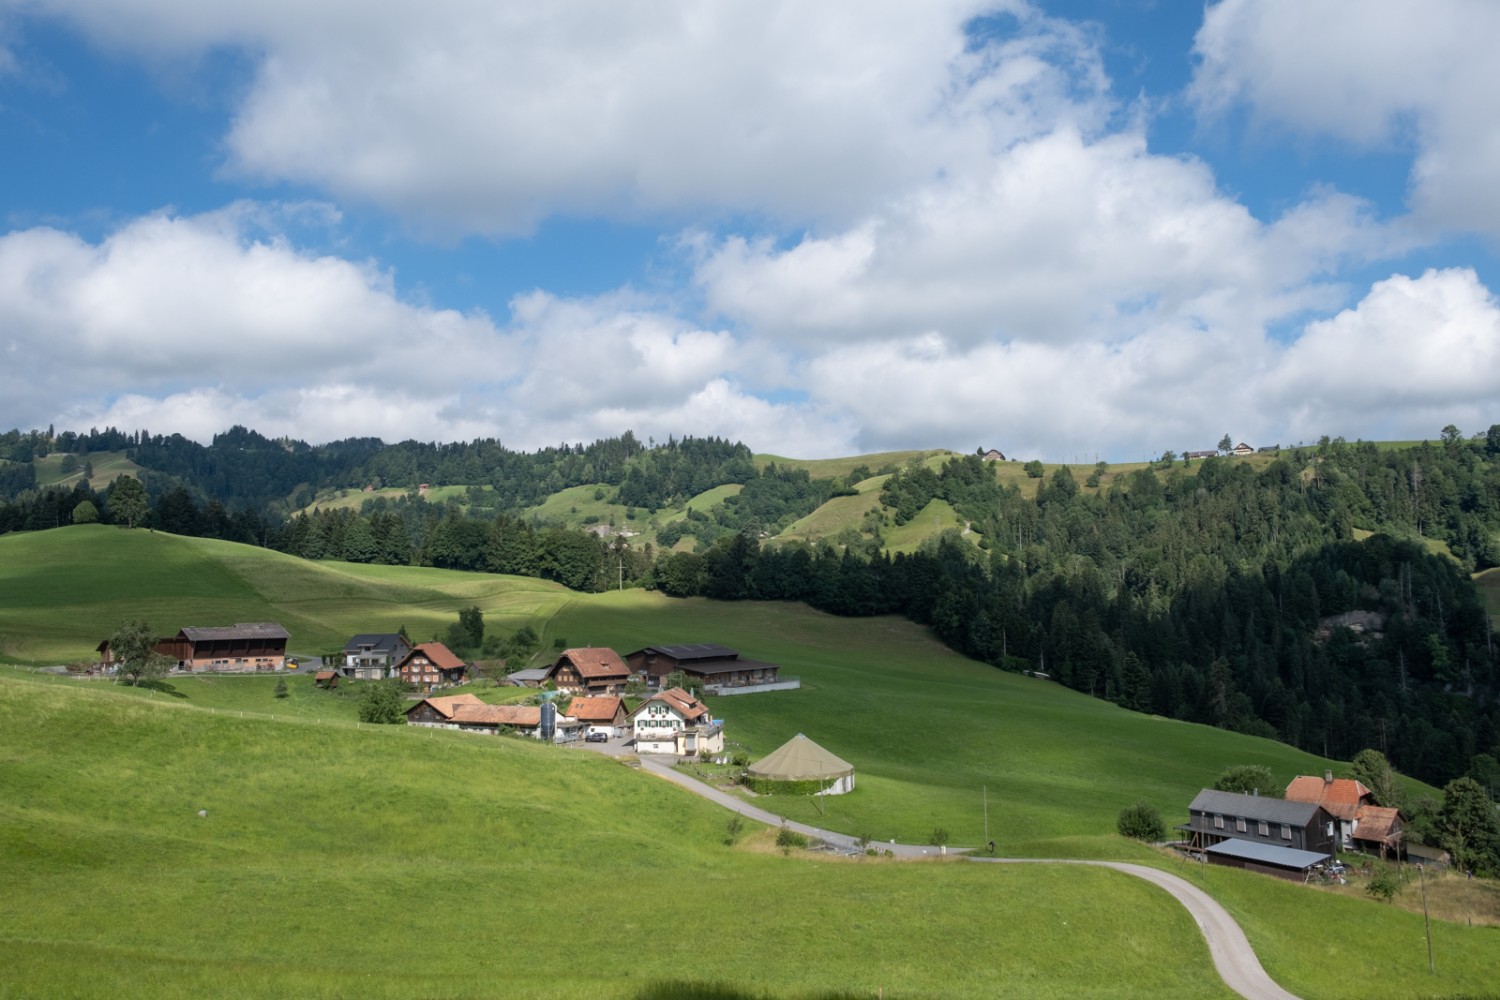 Sanfte Hügel, Bauernhöfe dazwischen: so präsentiert sich die Landschaft um Romoos. Bild: Markus Ruff